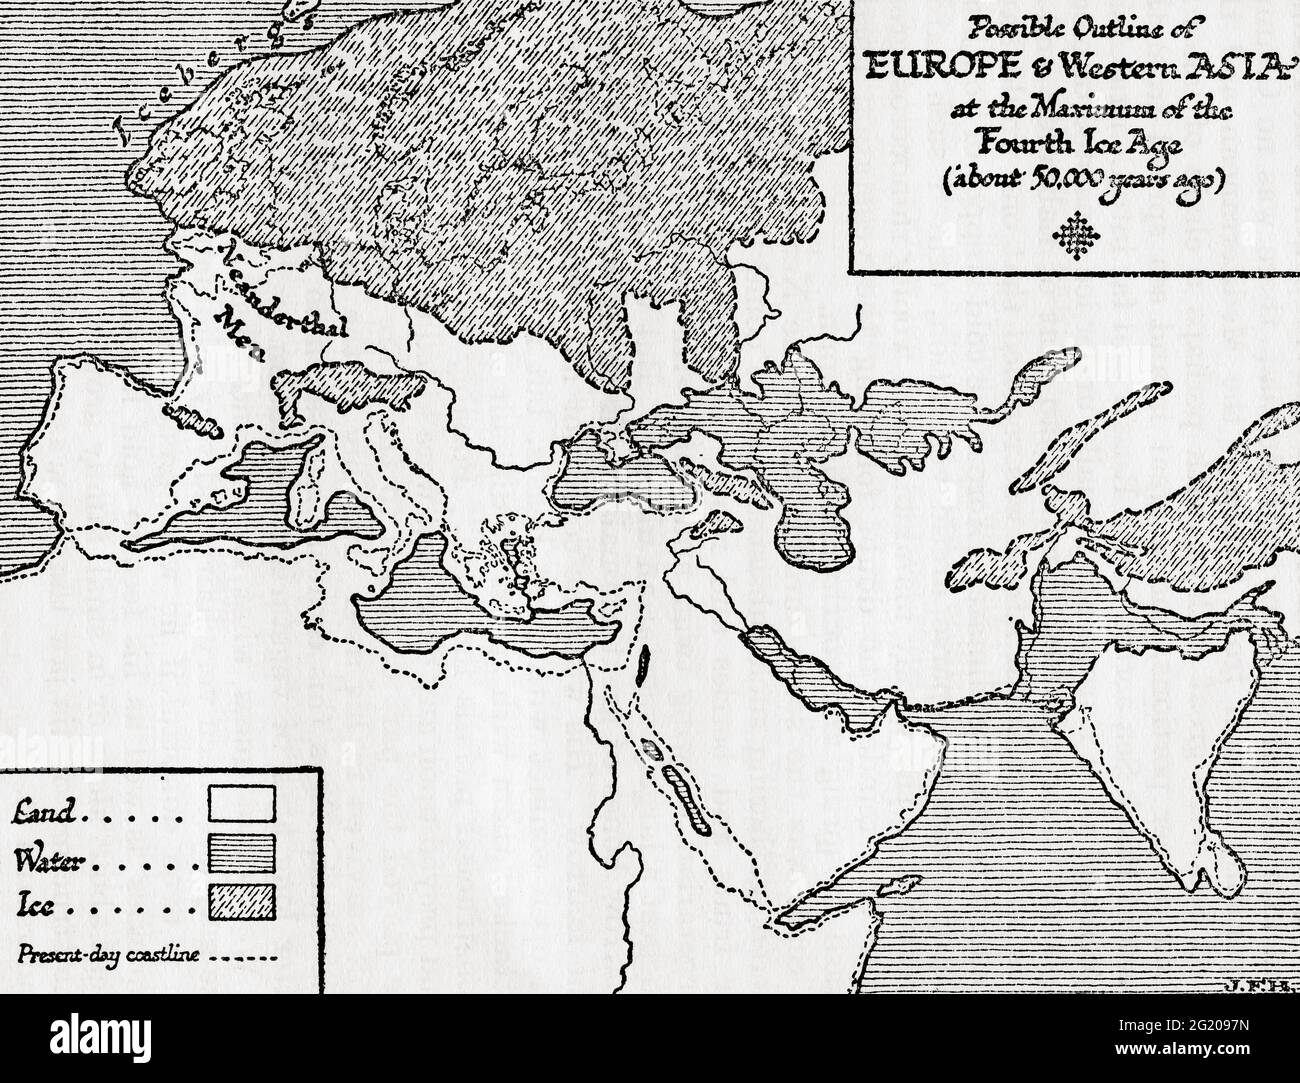 Carte des contours possibles de l'Europe et de l'Asie occidentale au maximum du quatrième âge glaciaire. Tiré d'UNE brève histoire du monde, publié vers 1936 Banque D'Images